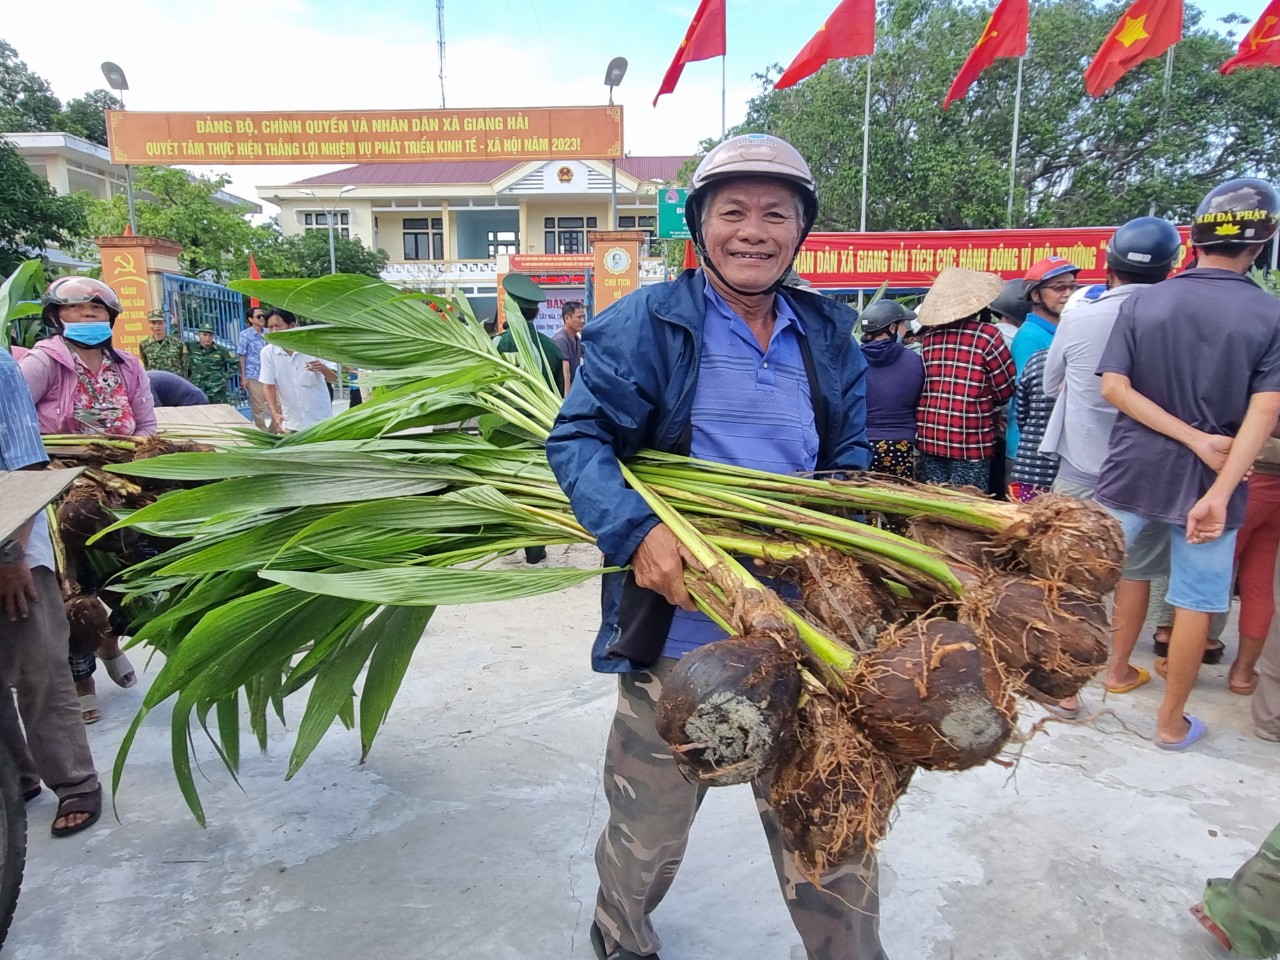 Xã Giang Hải Sau đã tiến hành nghiên cứu thổ nhưỡng và khí hậu tại địa phương và kêu gọi mạnh thường quân hỗ trợ các loại cây giống phù hợp để trồng.